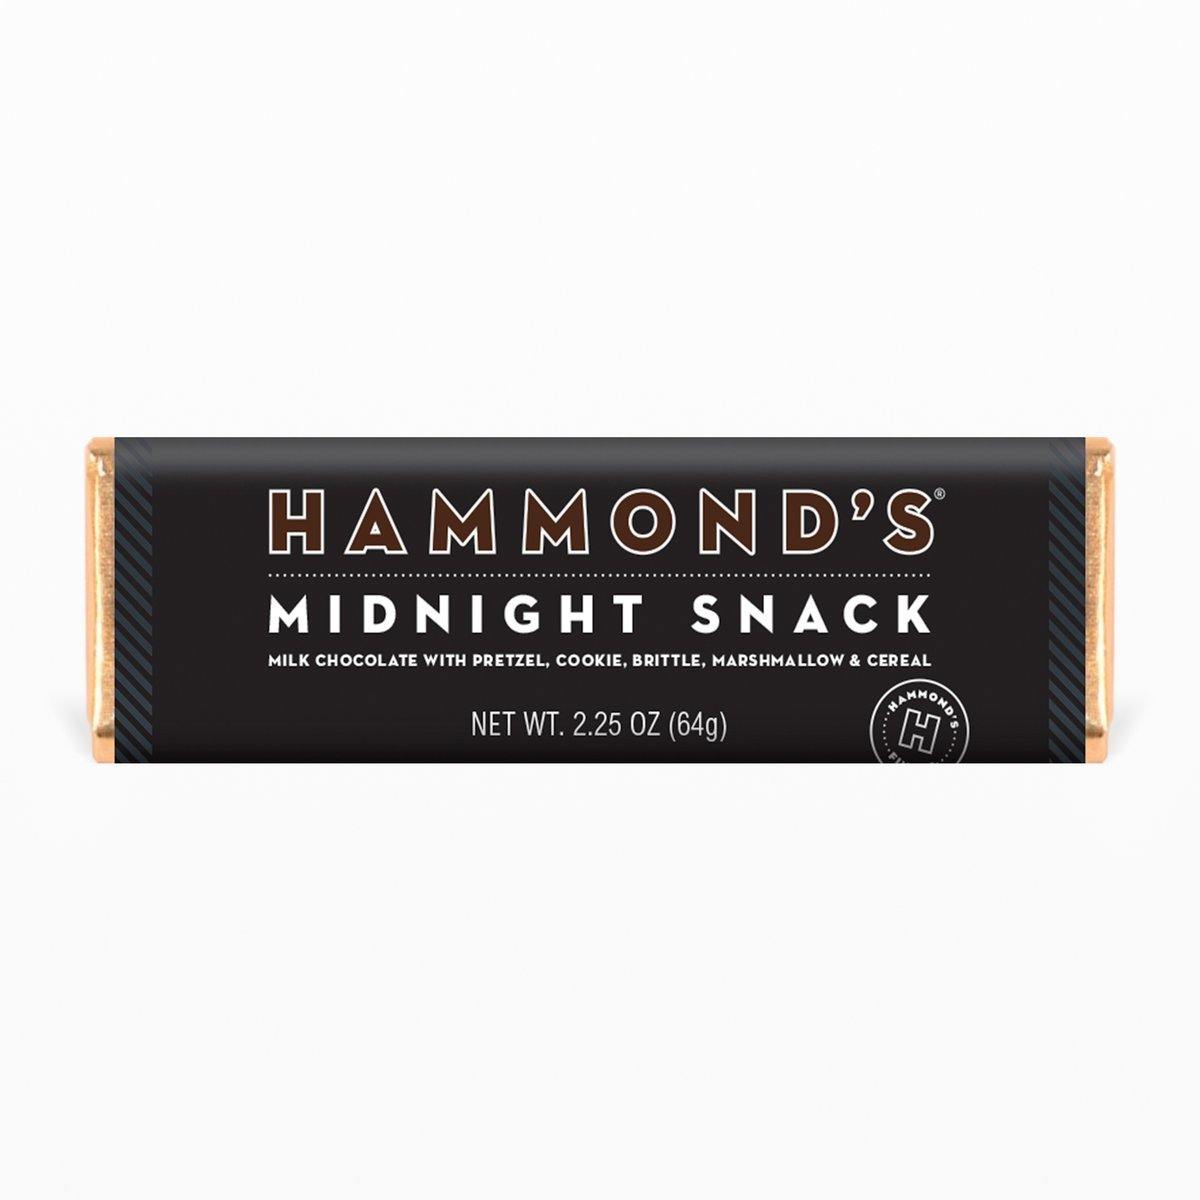 Hammond's Candies Milk Chocolate Candy Bar 2.25oz - Midnight Snack